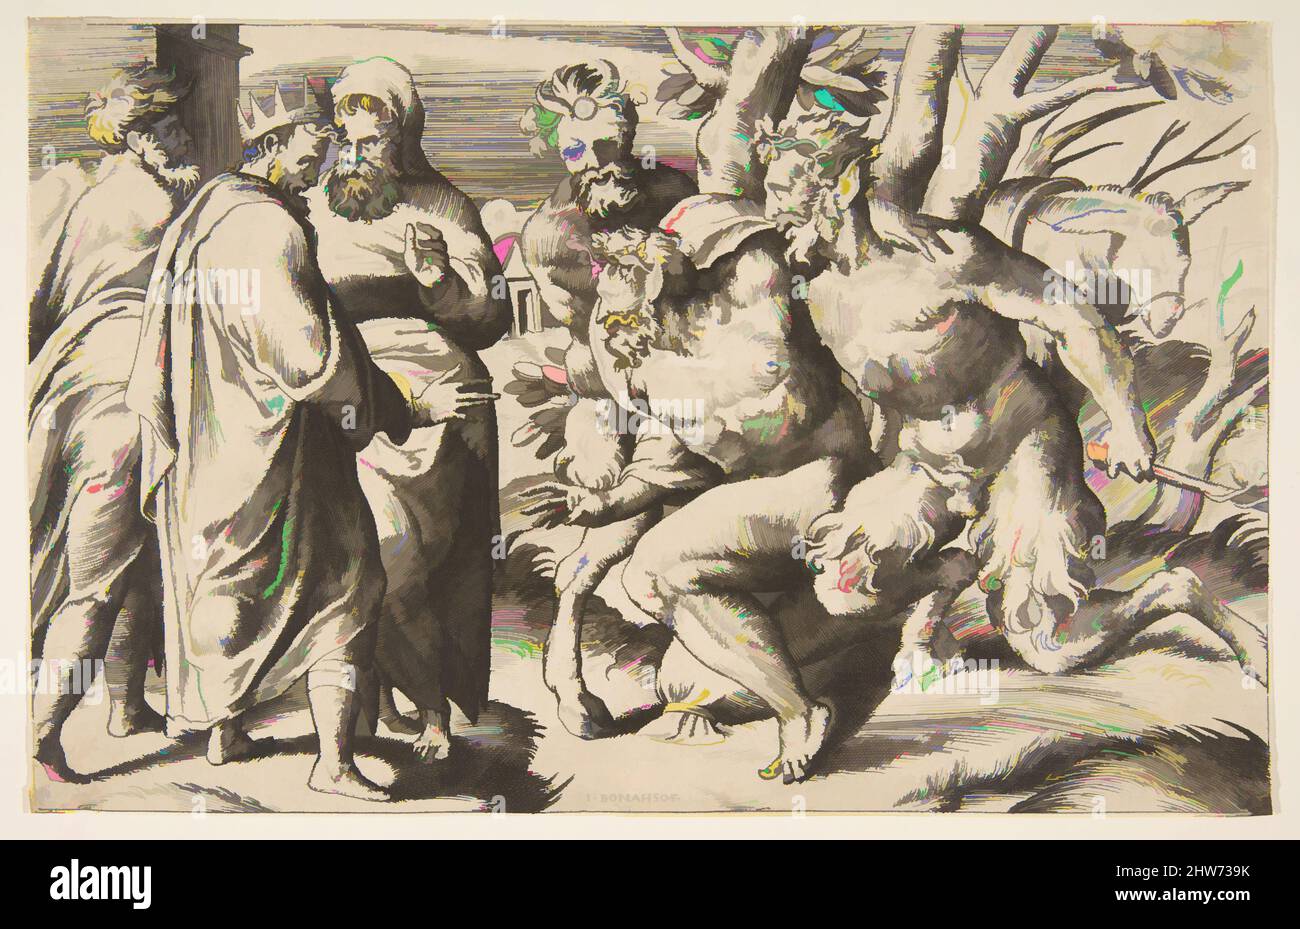 Kunst inspiriert von zwei Satyrs, die Silenus King Midas links stehen, 1531–76, Gravur, Blatt: 5 1/2 x 8 9/16 Zoll (13,9 x 21,8 cm), Drucke, Giulio Bonasone (italienisch, aktives Rom und Bologna, 1531–nach 1576, Klassische Werke, die von Artotop mit einem Schuss Moderne modernisiert wurden. Formen, Farbe und Wert, auffällige visuelle Wirkung auf Kunst. Emotionen durch Freiheit von Kunstwerken auf zeitgemäße Weise. Eine zeitlose Botschaft, die eine wild kreative neue Richtung verfolgt. Künstler, die sich dem digitalen Medium zuwenden und die Artotop NFT erschaffen Stockfoto